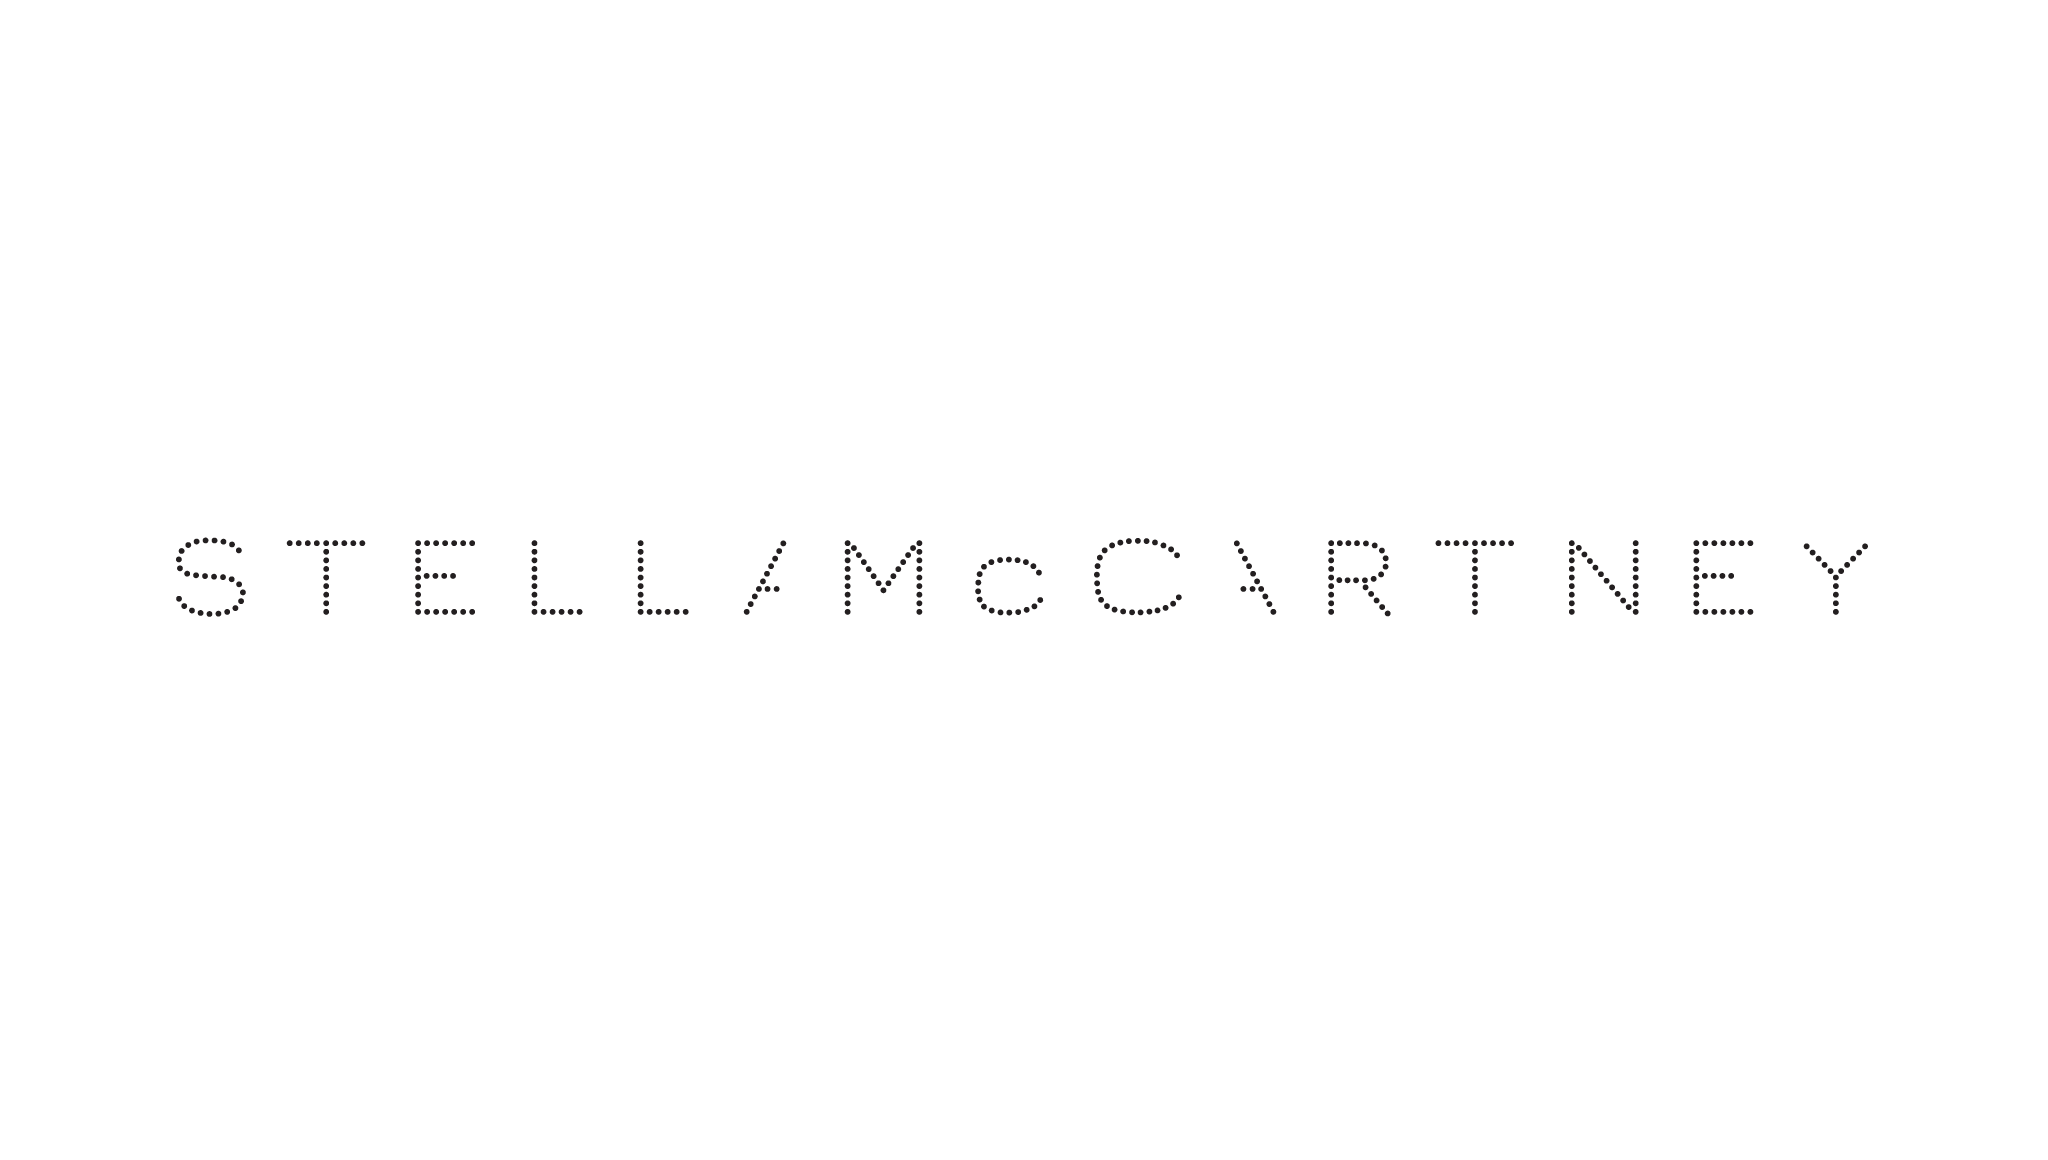 Stella McCartney Logo - Stella mccartney Logos